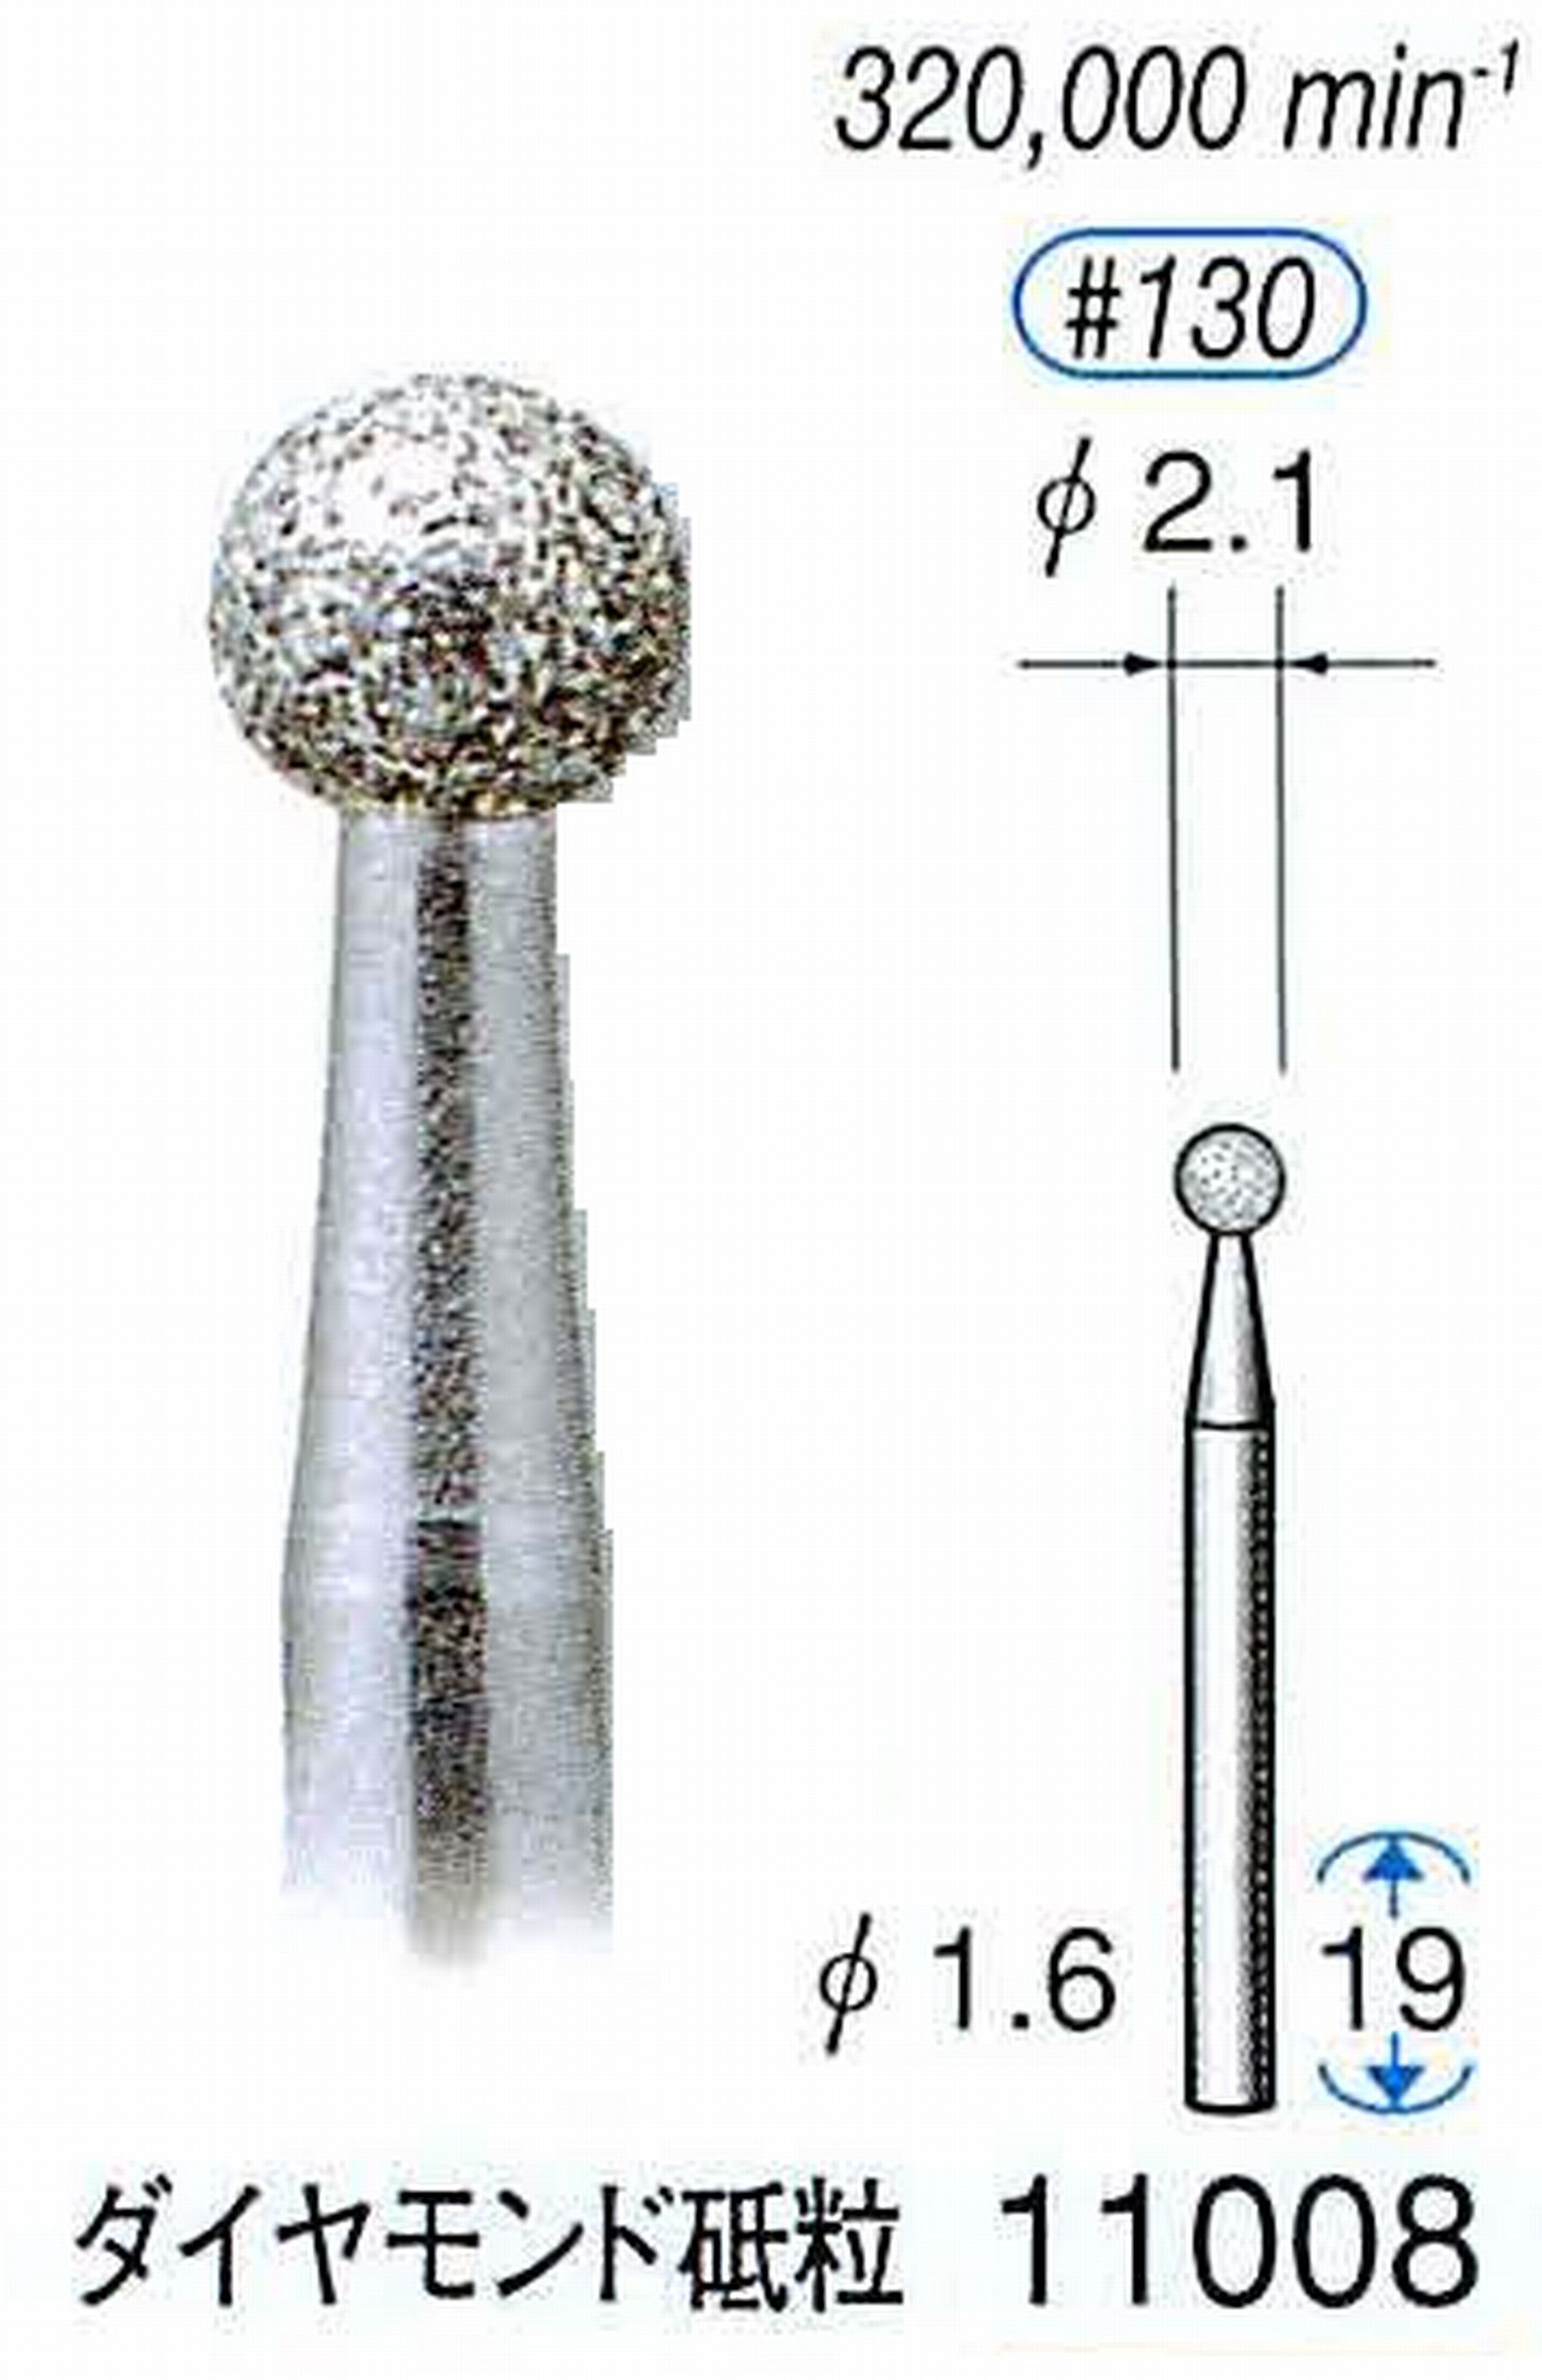 ナカニシ/NAKANISHI 電着ダイヤモンドバー(ミニチュアタイプ)ダイヤモンド砥粒 軸径(シャンク)φ1.6mm 11008